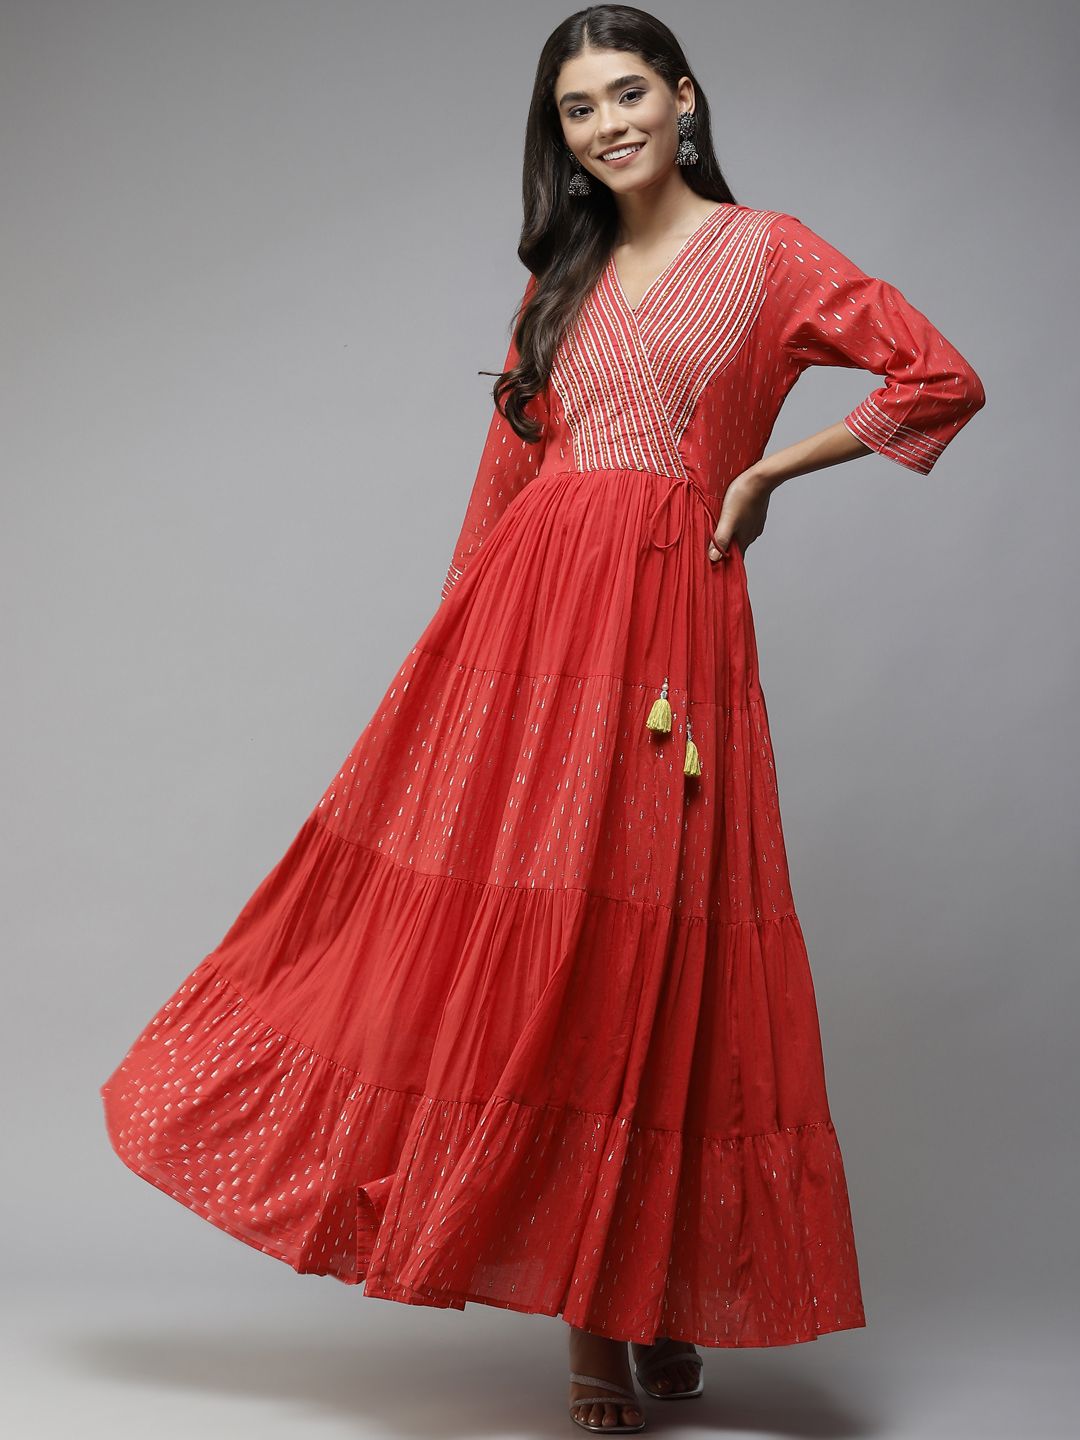 Yufta Red Gotta Patti Tiered Pure Cotton Ethnic Maxi Dress Price in India